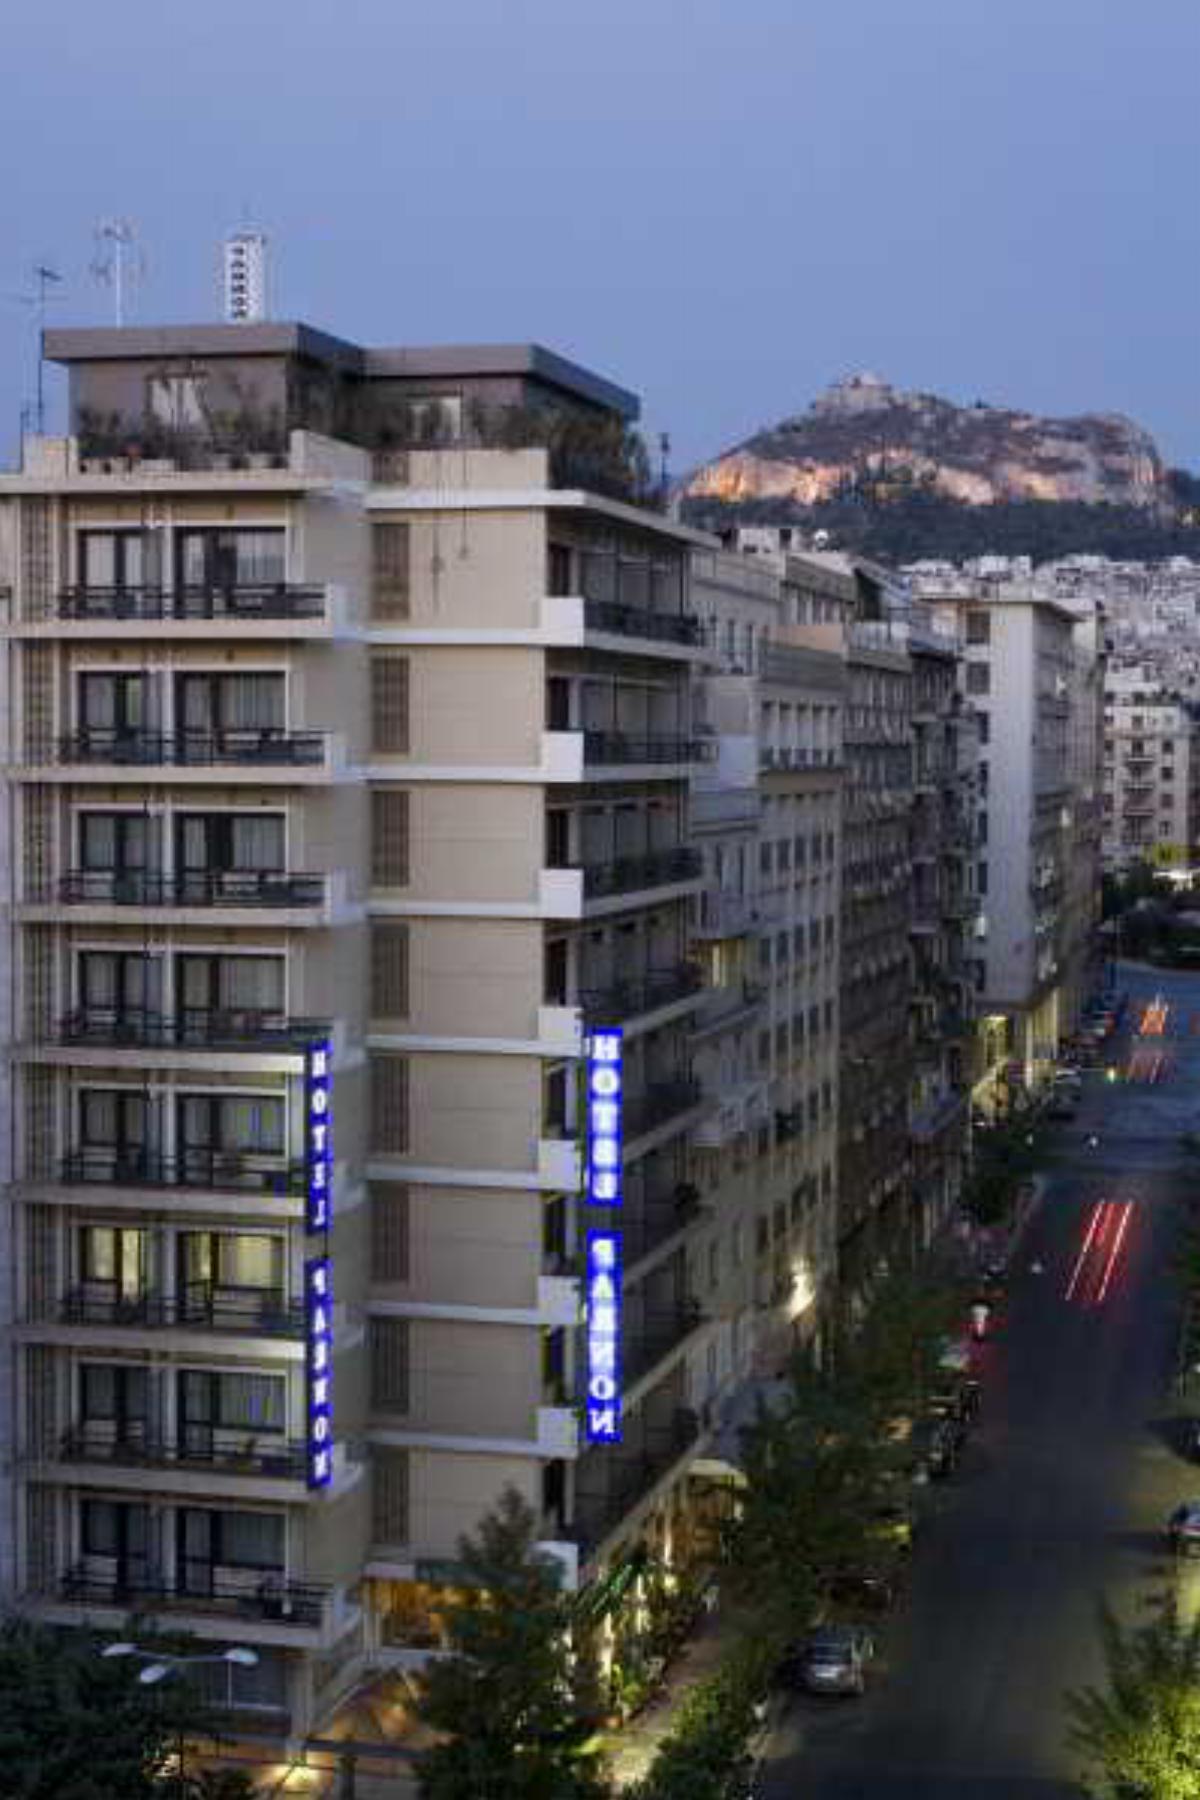 Parnon Hotel Hotel Athens Greece